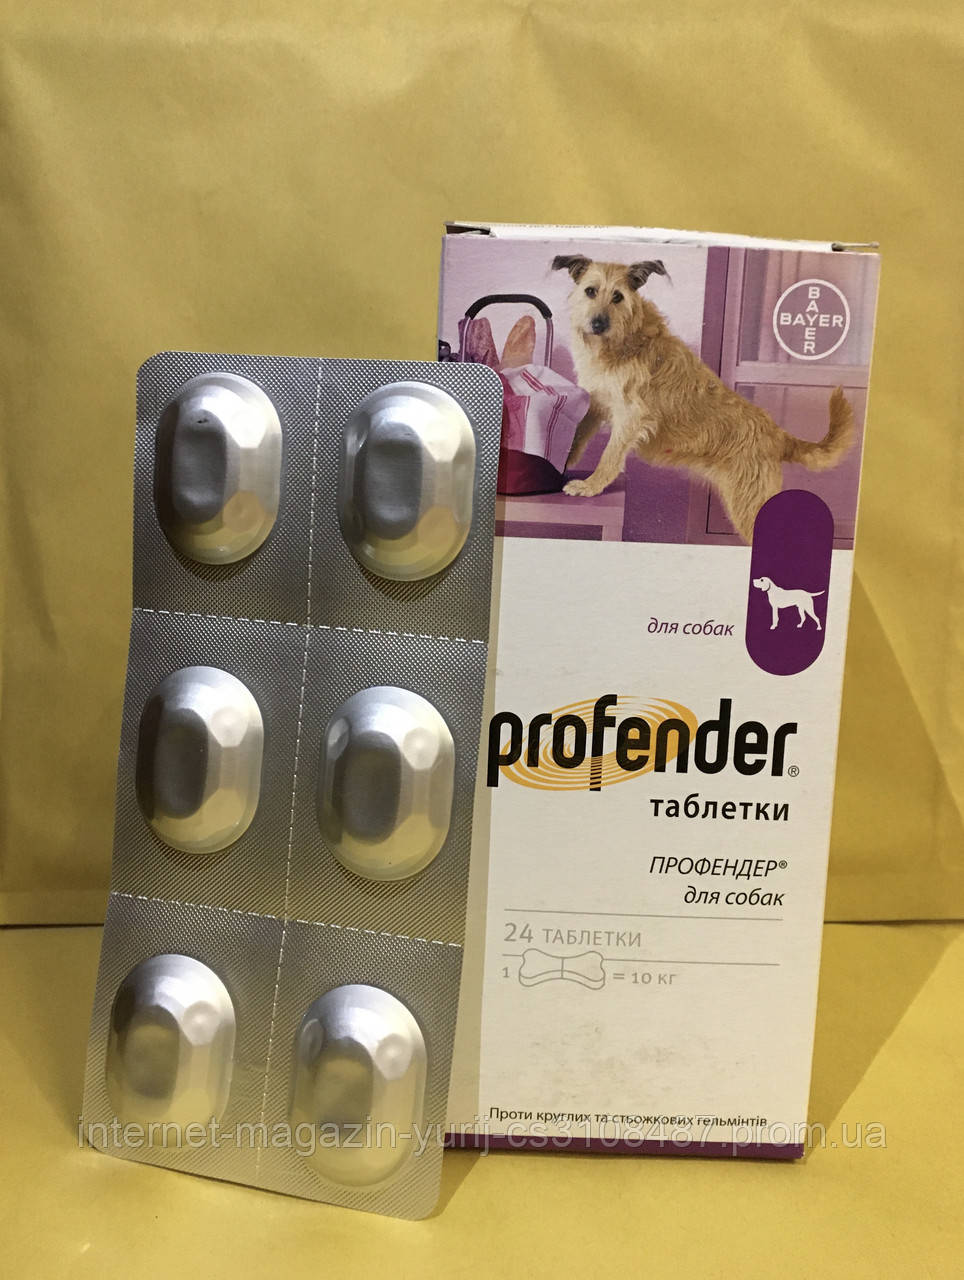 Bayer Profender (Профендер) Антигельминтик для собак с вкусом мяса (6 косточек)